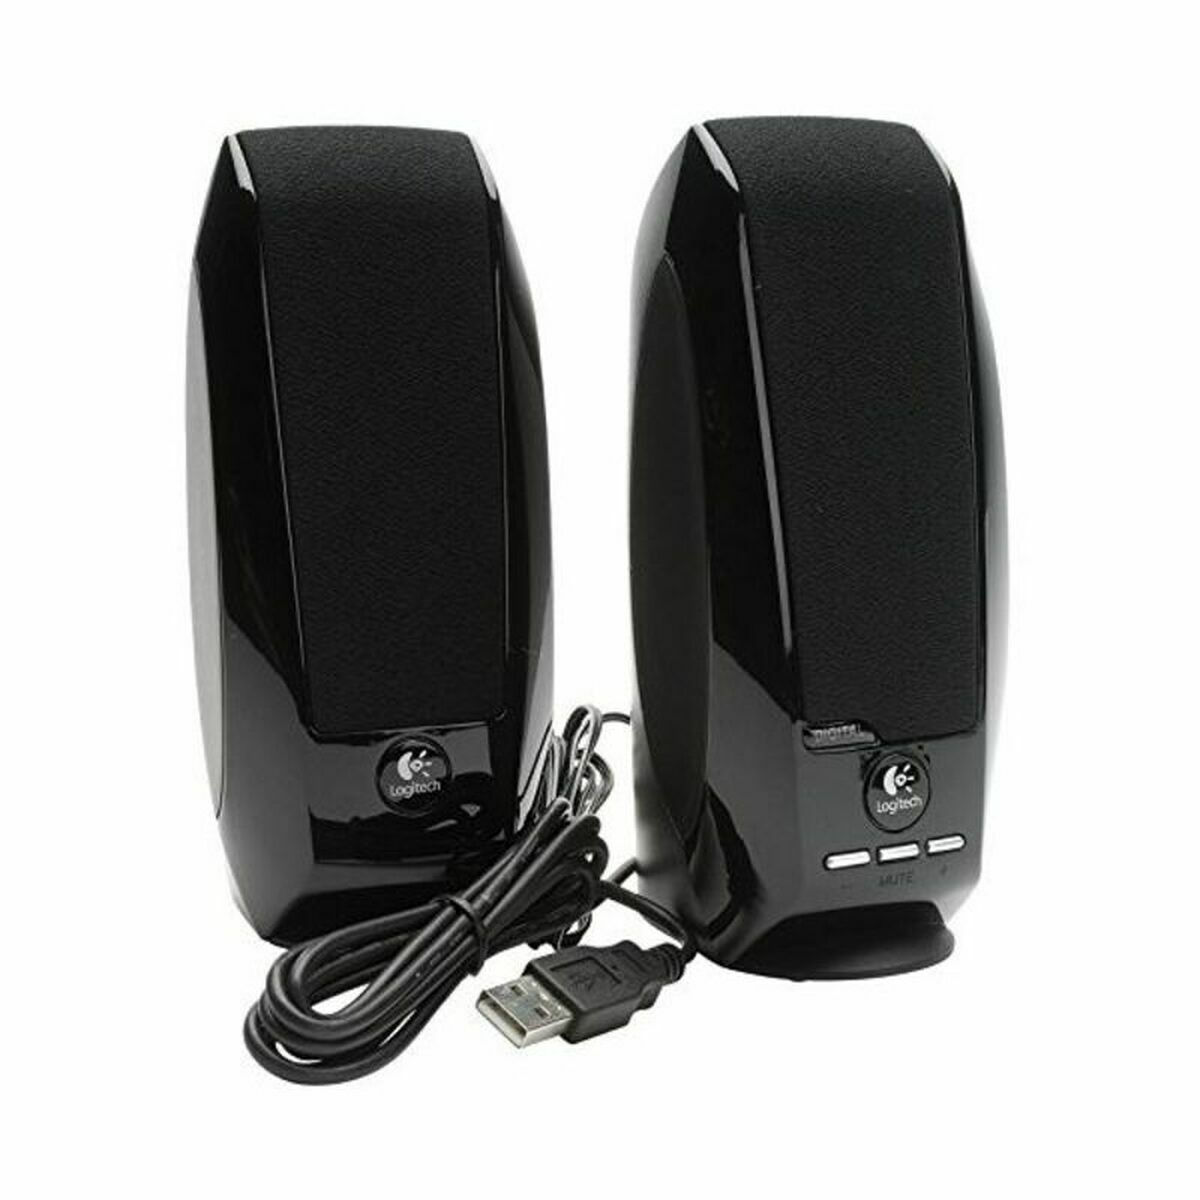 Multimedia Speakers Logitech 980-000029           2.0 3W OEM